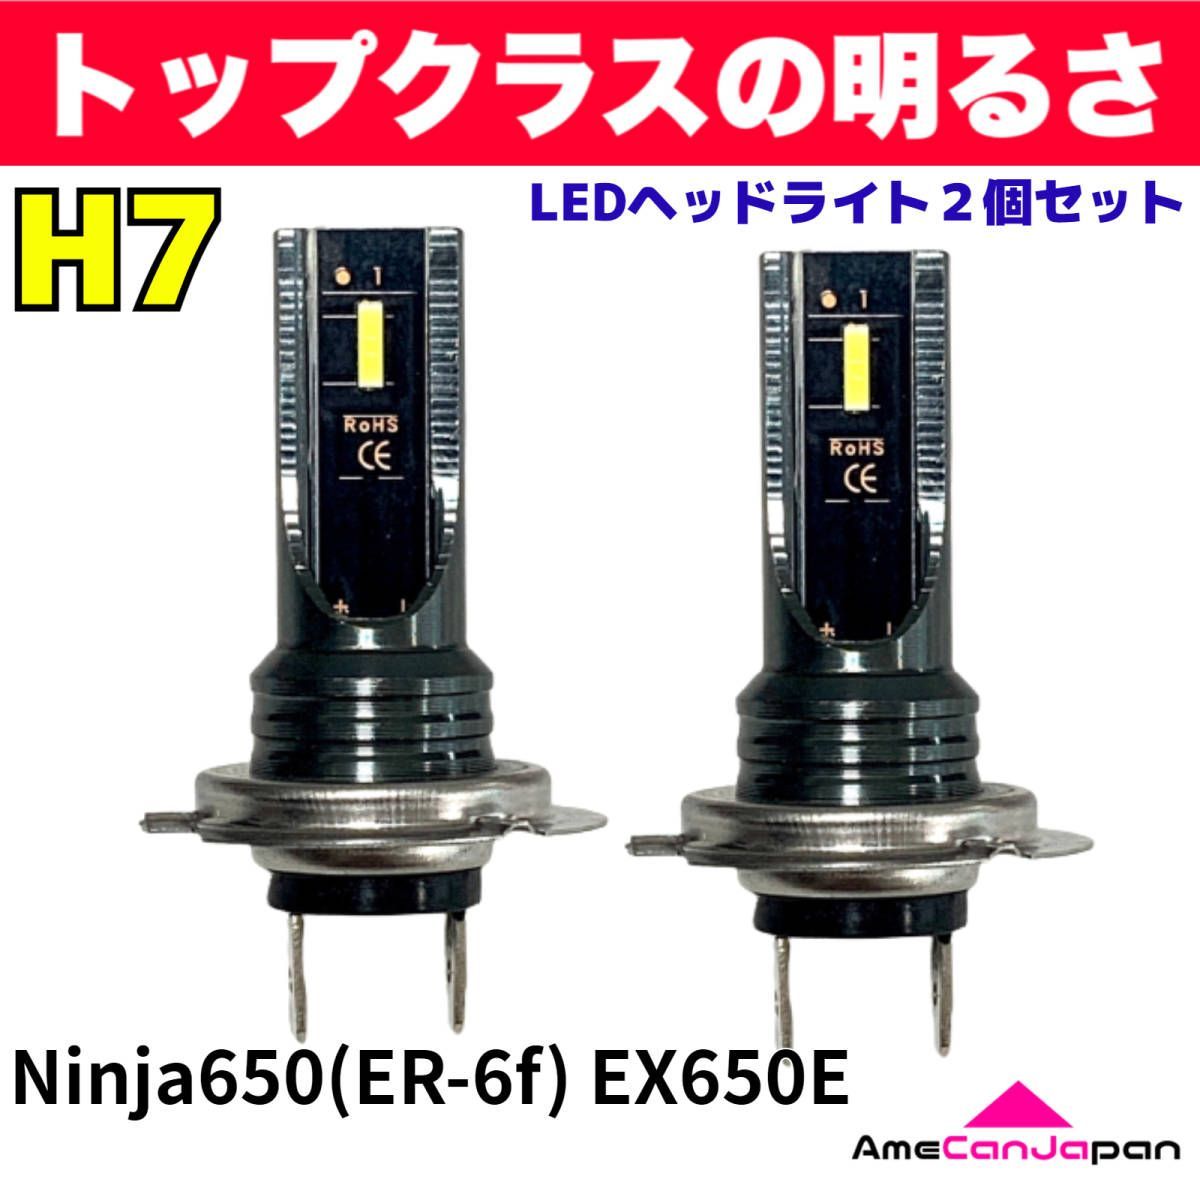 カワサキ Ninja650(ER-6f) EX650E 適合 H7 LED ヘッドライト バイク用 Hi LOW ホワイト 2灯 爆光  CSPチップ搭載 パーツ バイク用品 - メルカリ